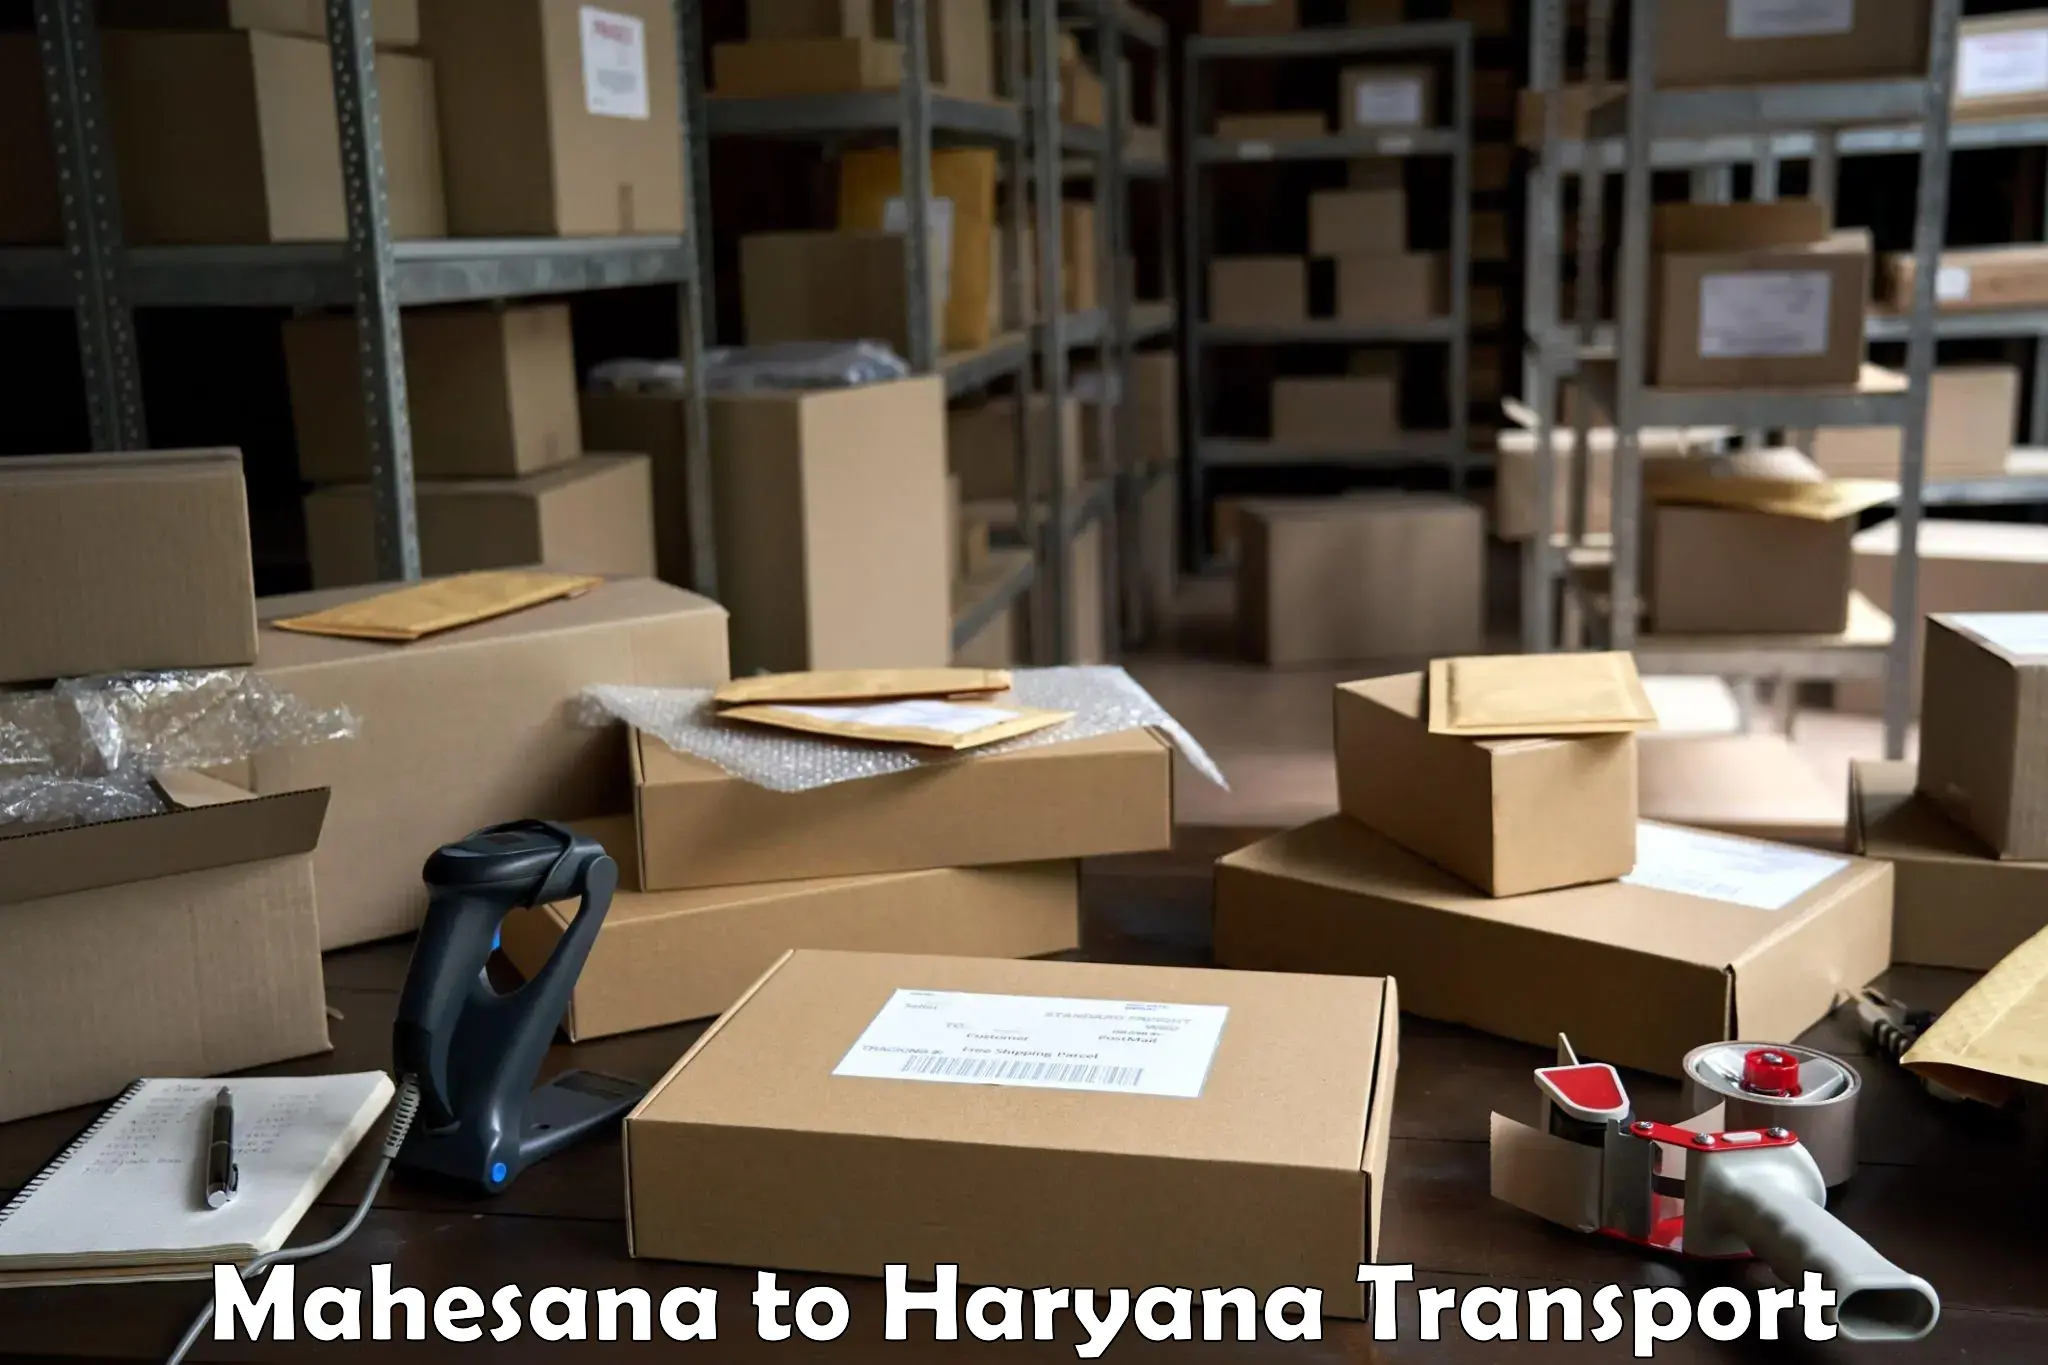 Container transport service Mahesana to Haryana